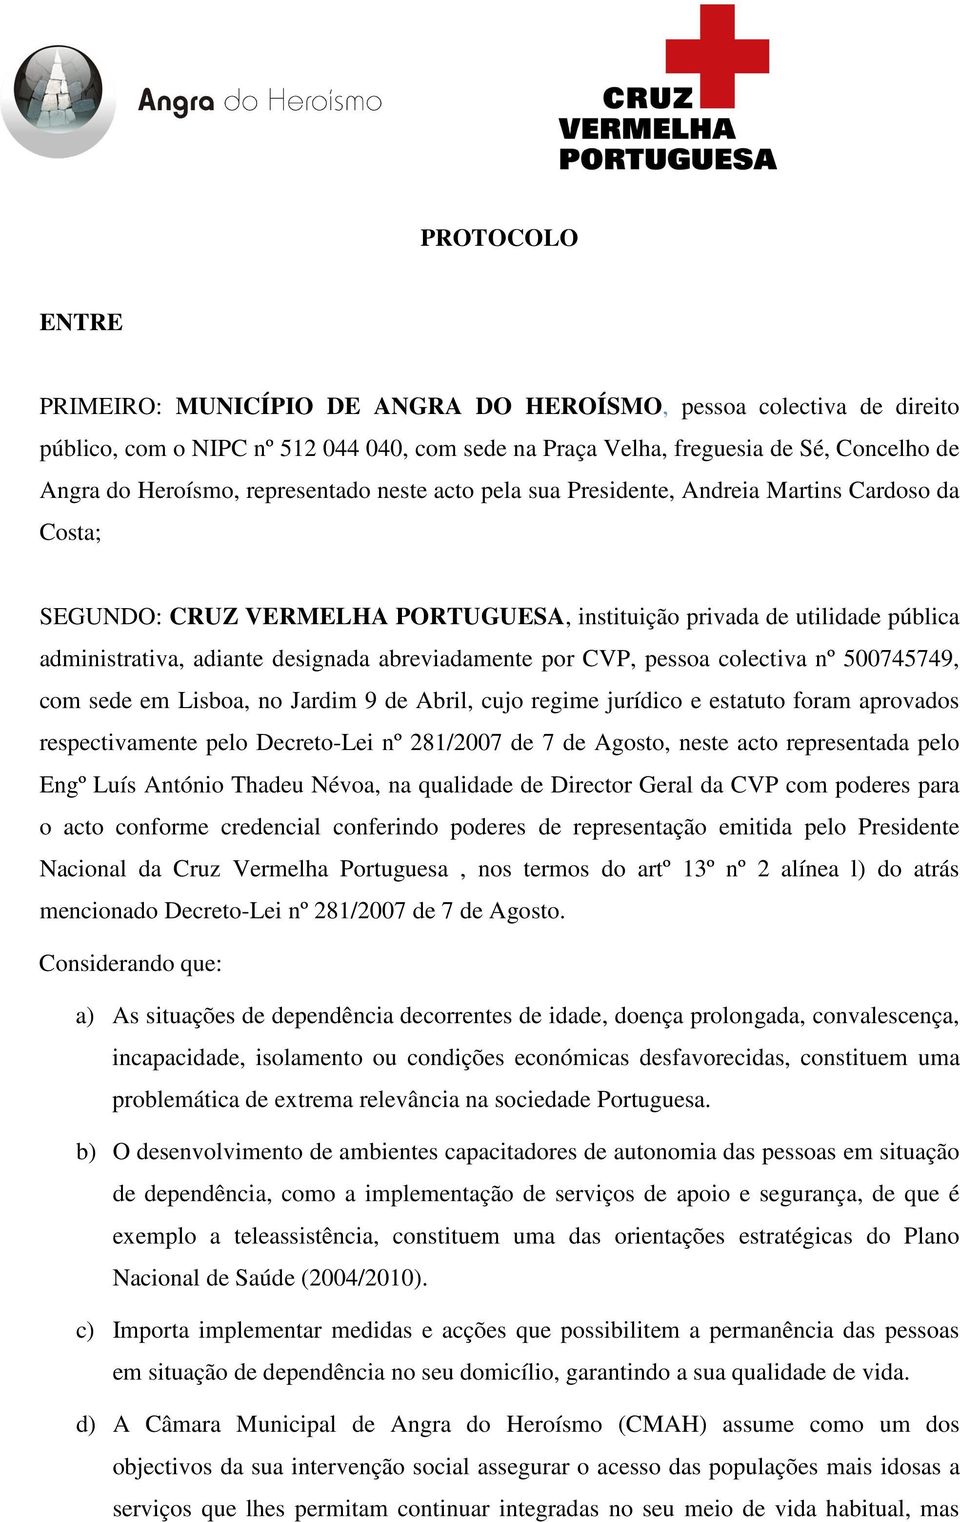 abreviadamente por CVP, pessoa colectiva nº 500745749, com sede em Lisboa, no Jardim 9 de Abril, cujo regime jurídico e estatuto foram aprovados respectivamente pelo Decreto-Lei nº 281/2007 de 7 de